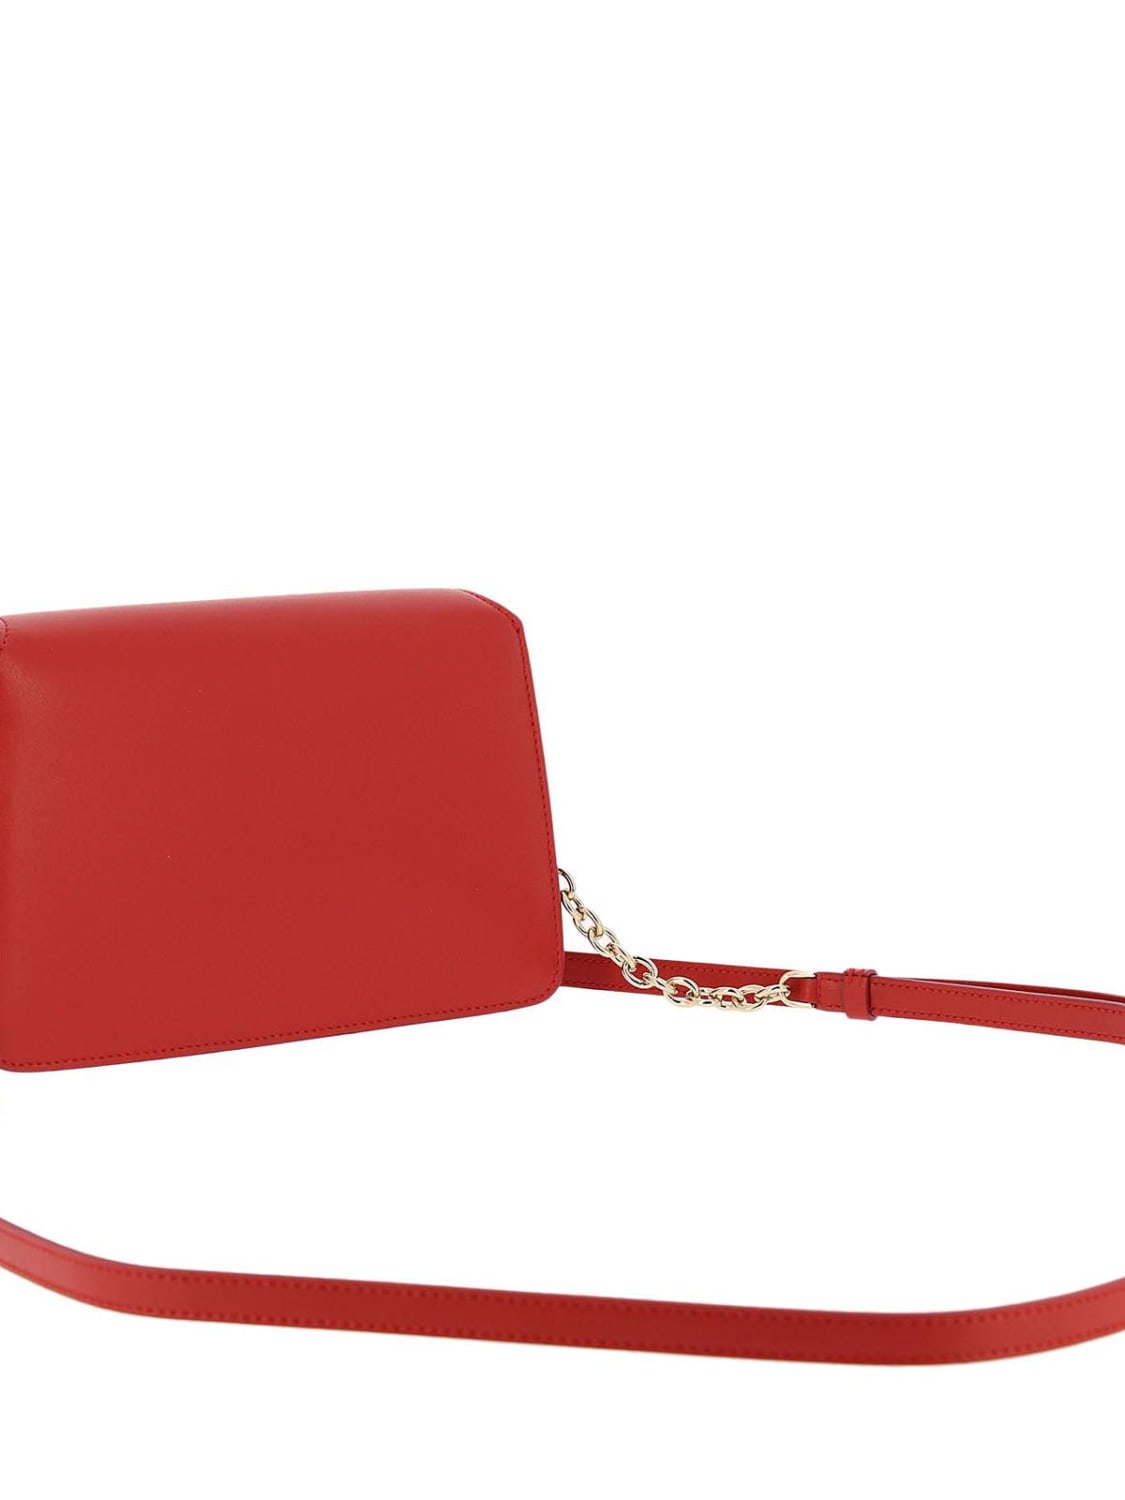 Crossbody bags Ferragamo: Ferragamo crossbody bags for woman red 2